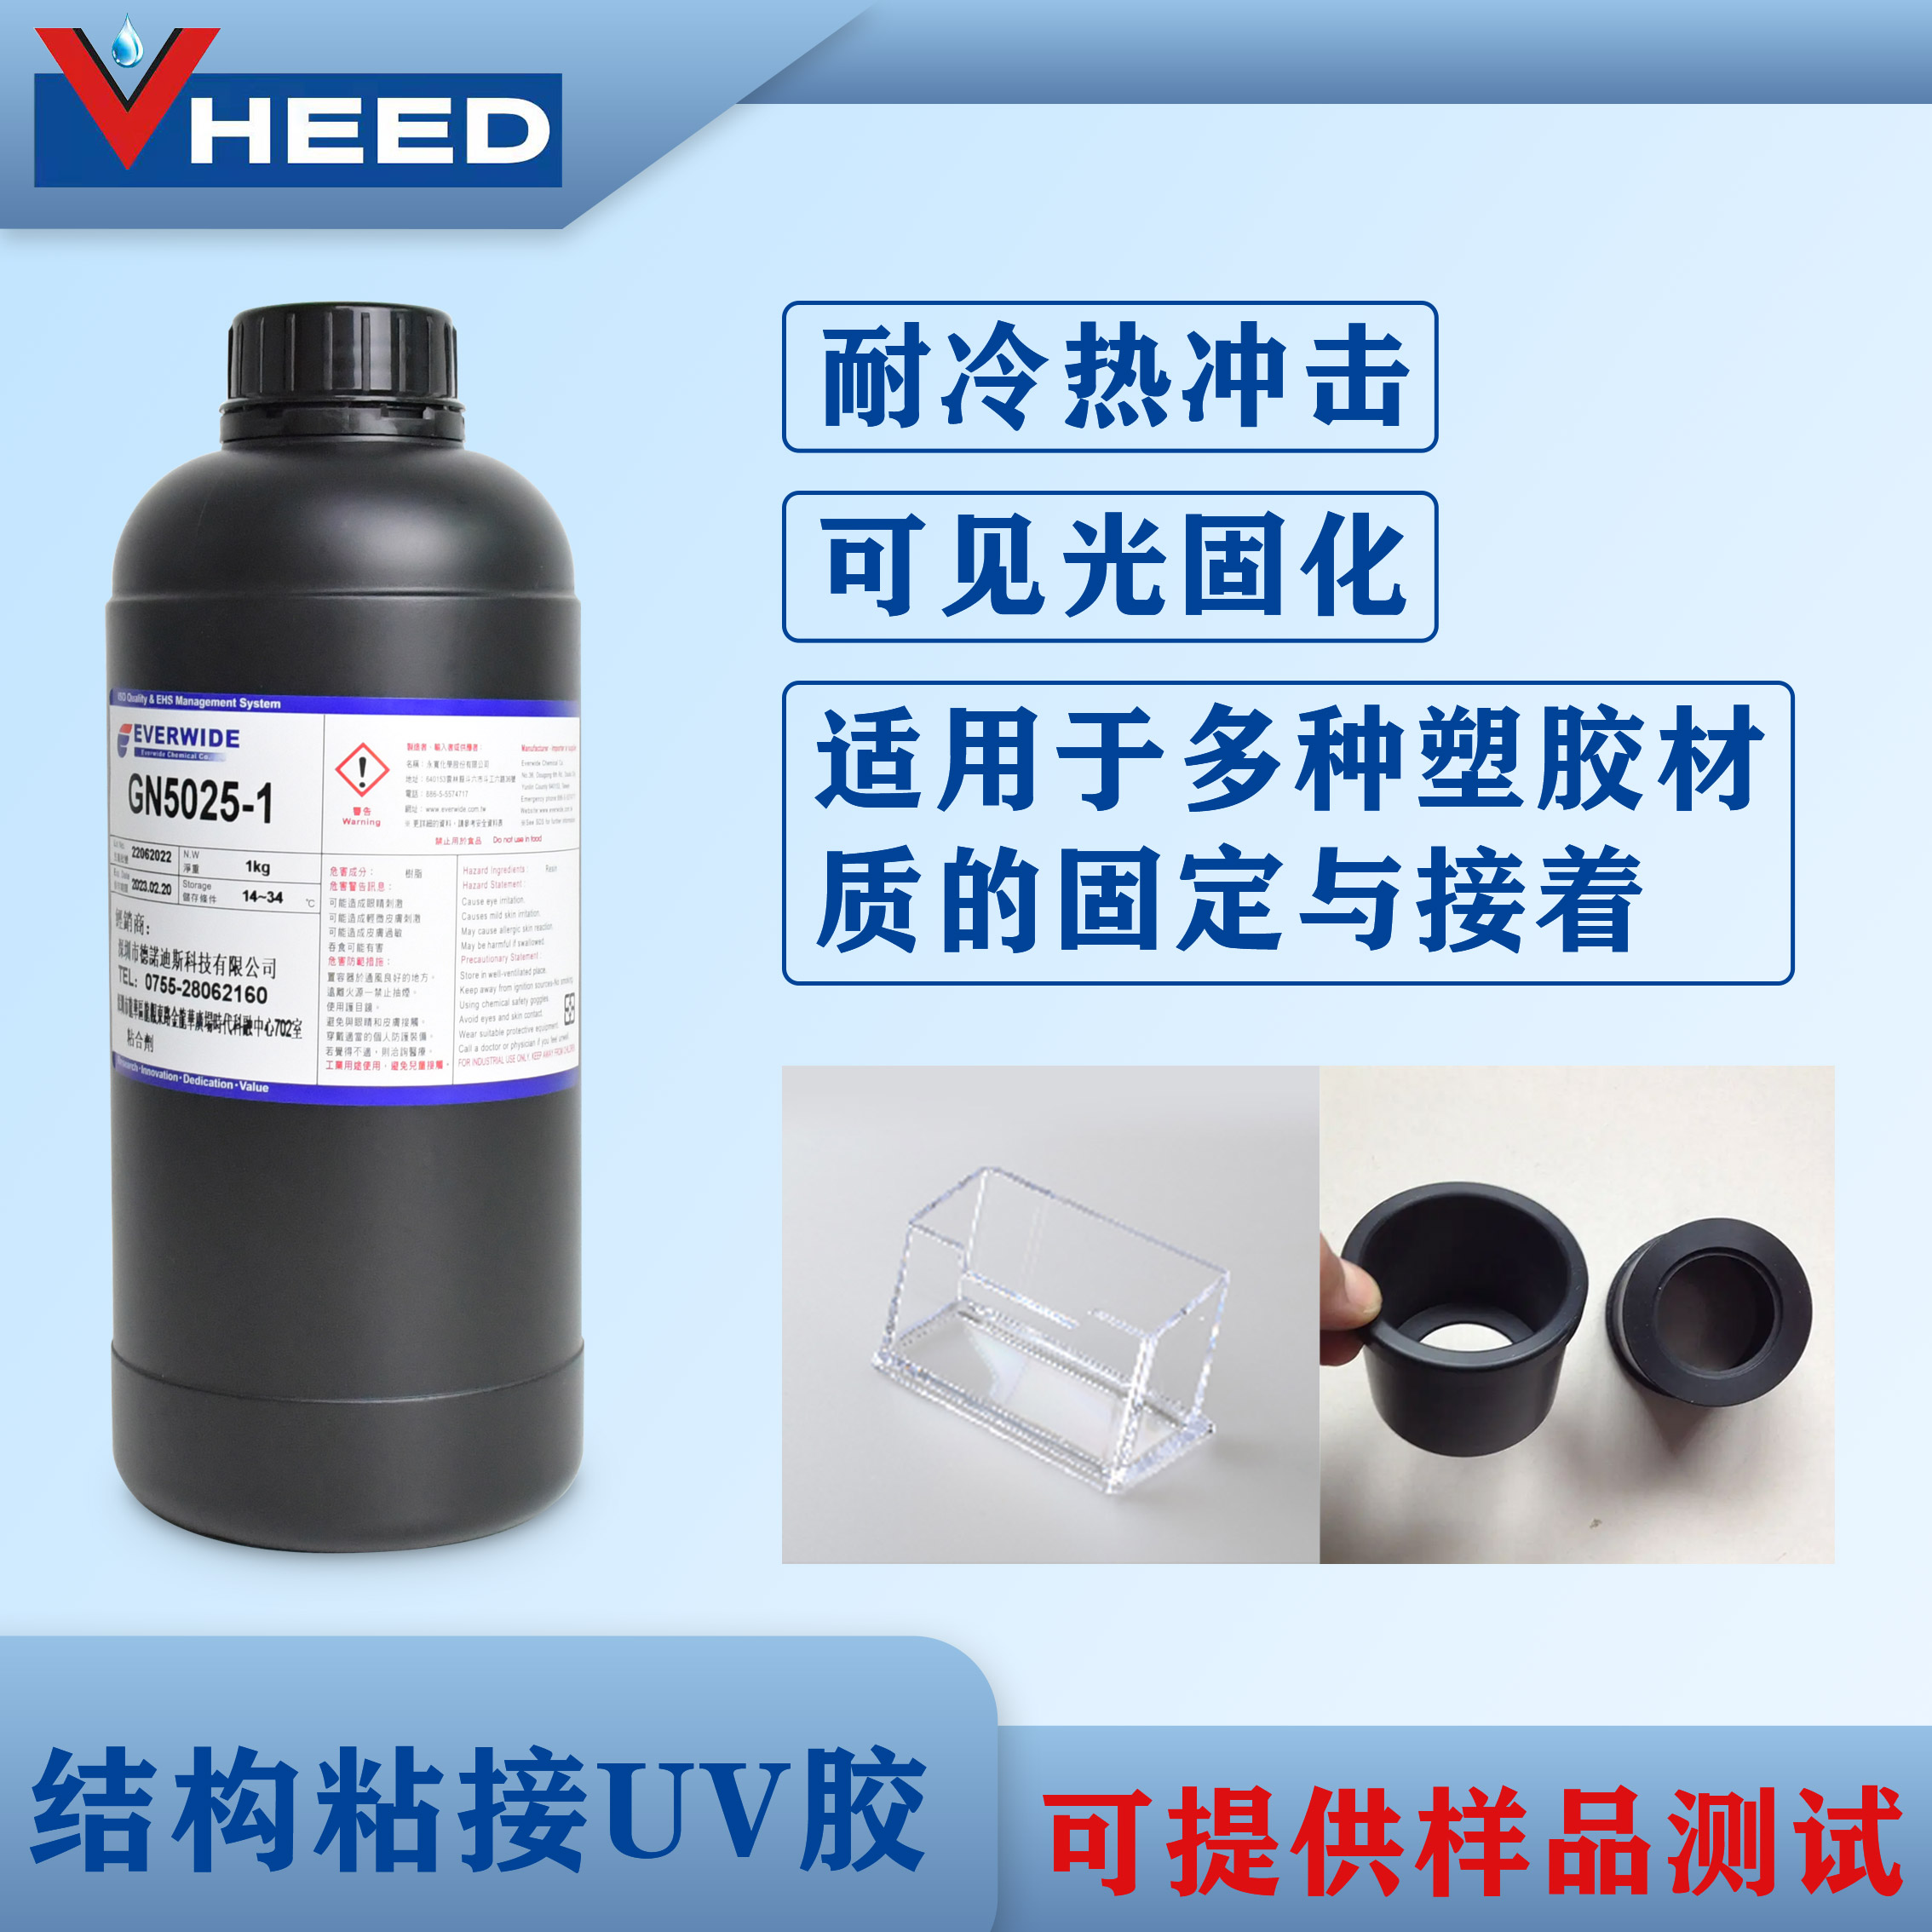 结构粘接胶水 UV胶GN5025-1 粘塑胶材质 固定与接着应用 耐冷热冲击